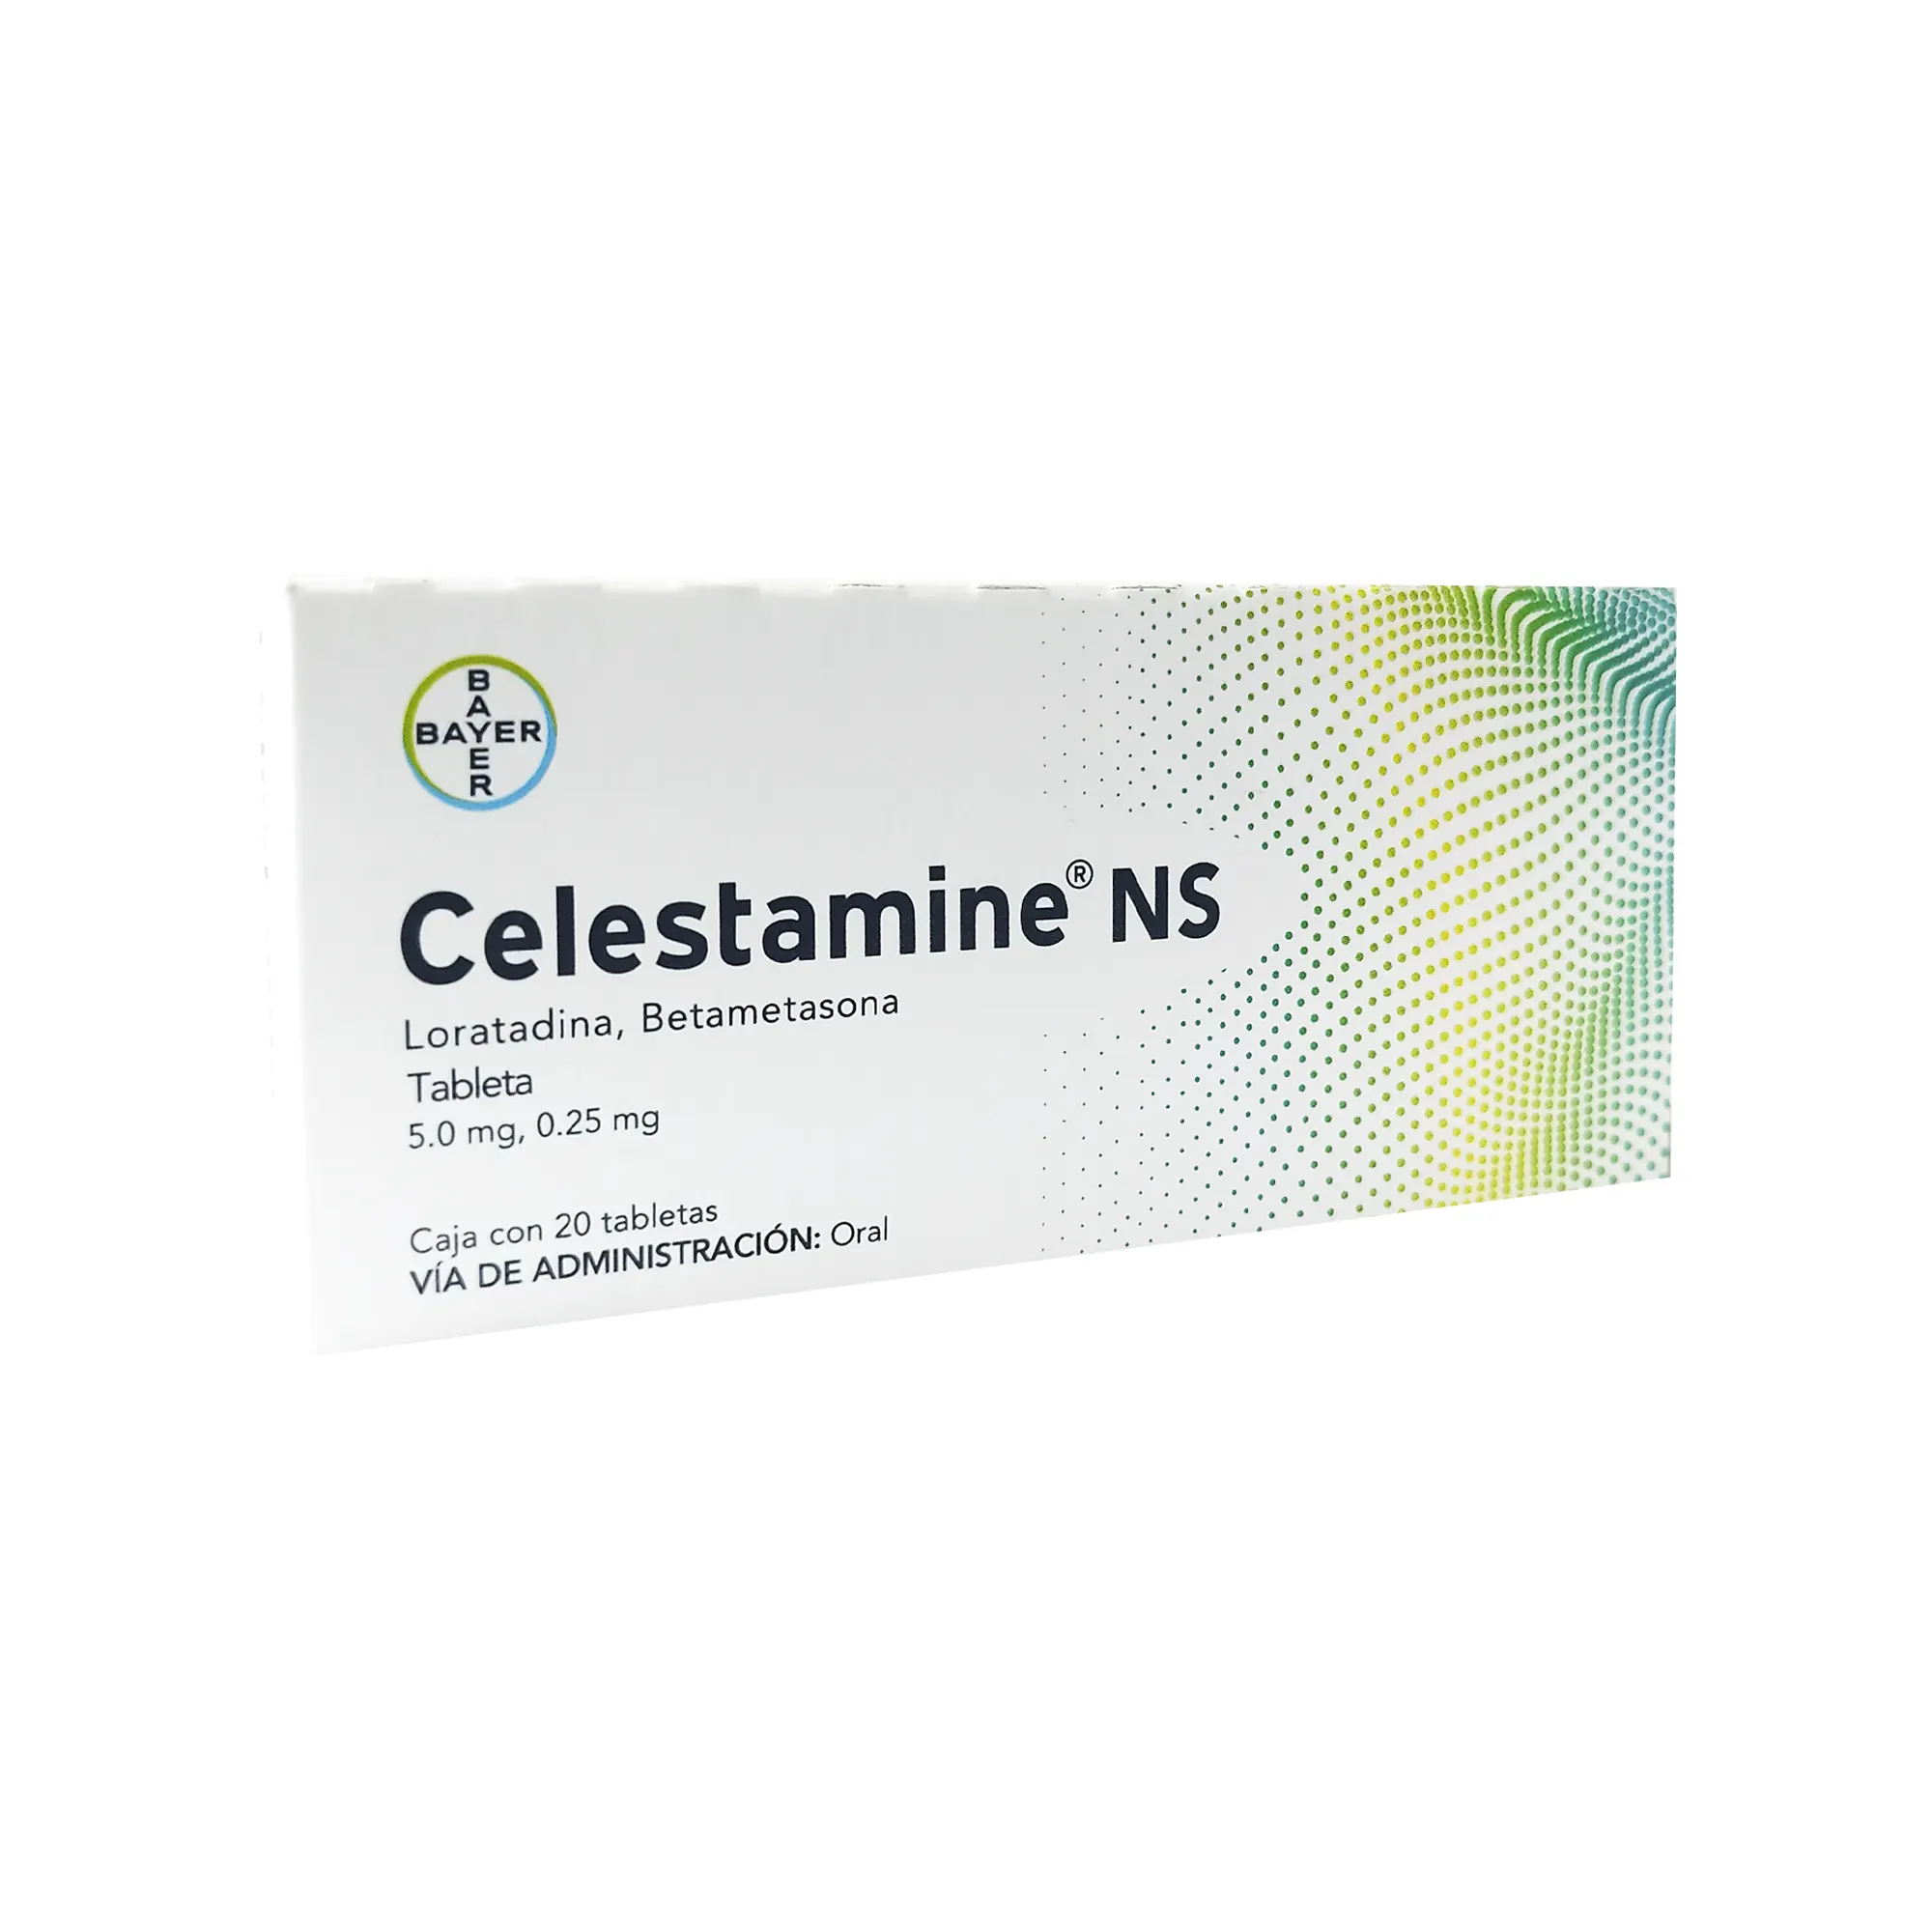 7501050600026 1 celestamine ns loratadina - betametasona 5.0/0.25 mg tableta 20 tableta(s)